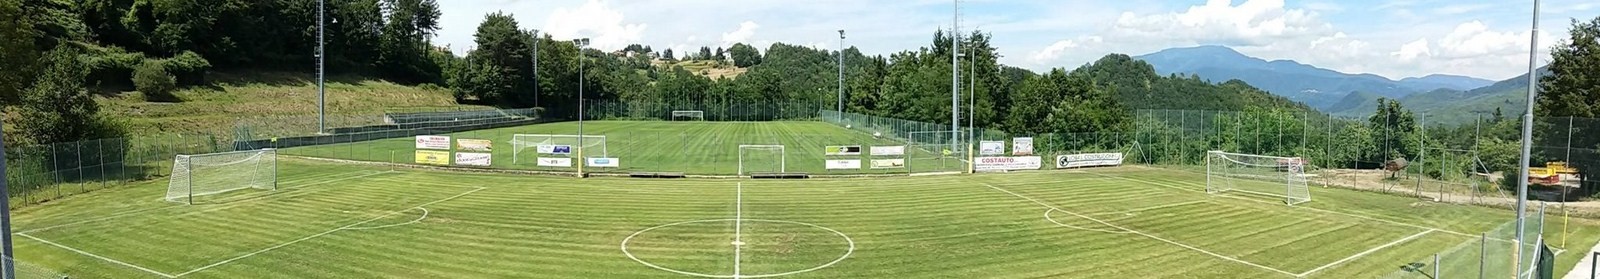 tavarone-centro-sportivo-calcio-liguria